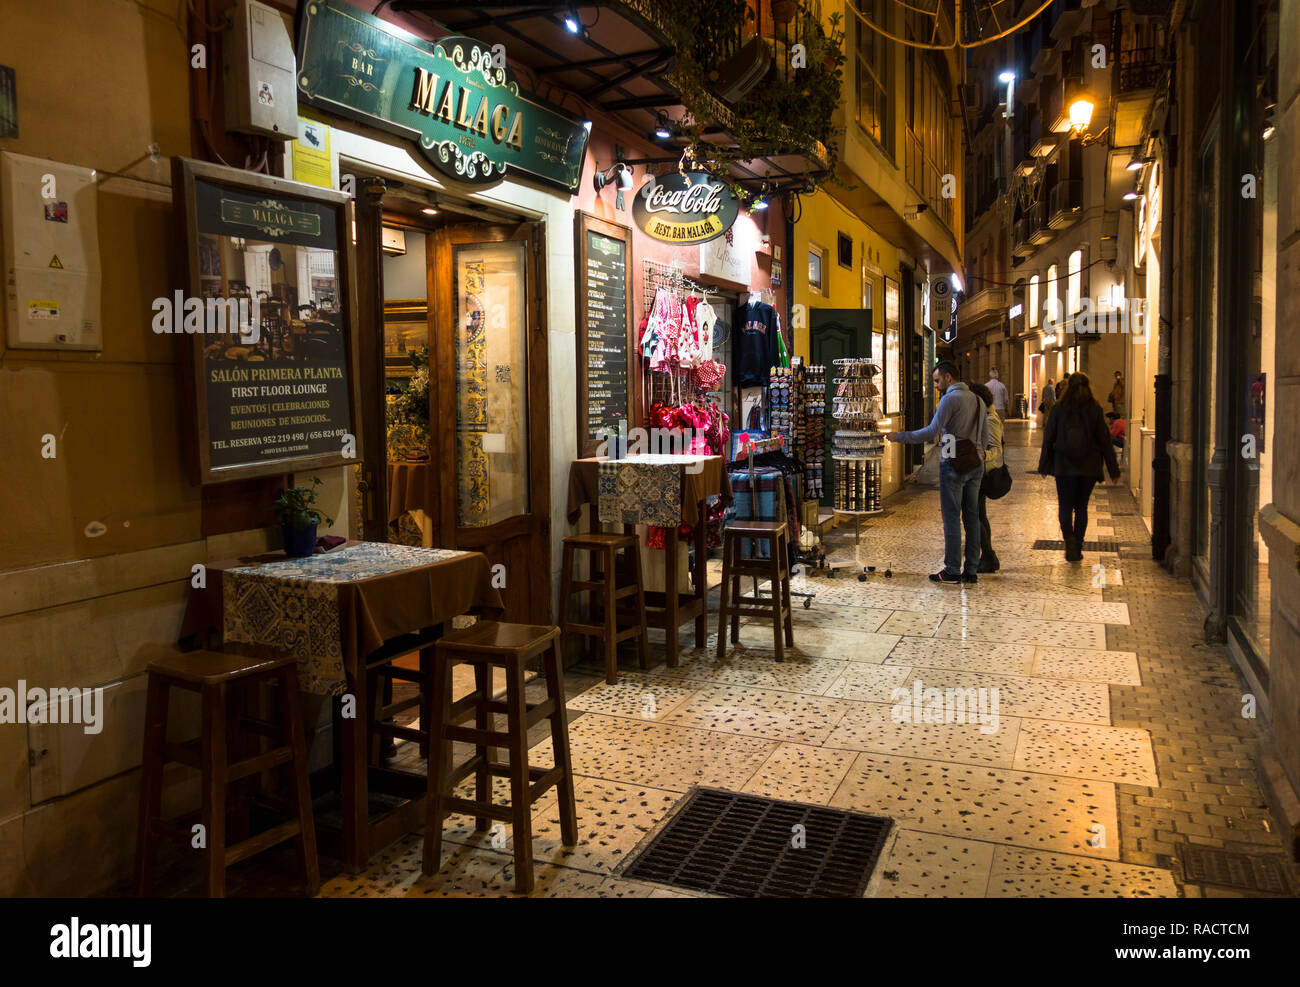 Typische Straße in Malaga bei Nacht mit Bars und Terrassen, Malaga, Spanien. Stockfoto